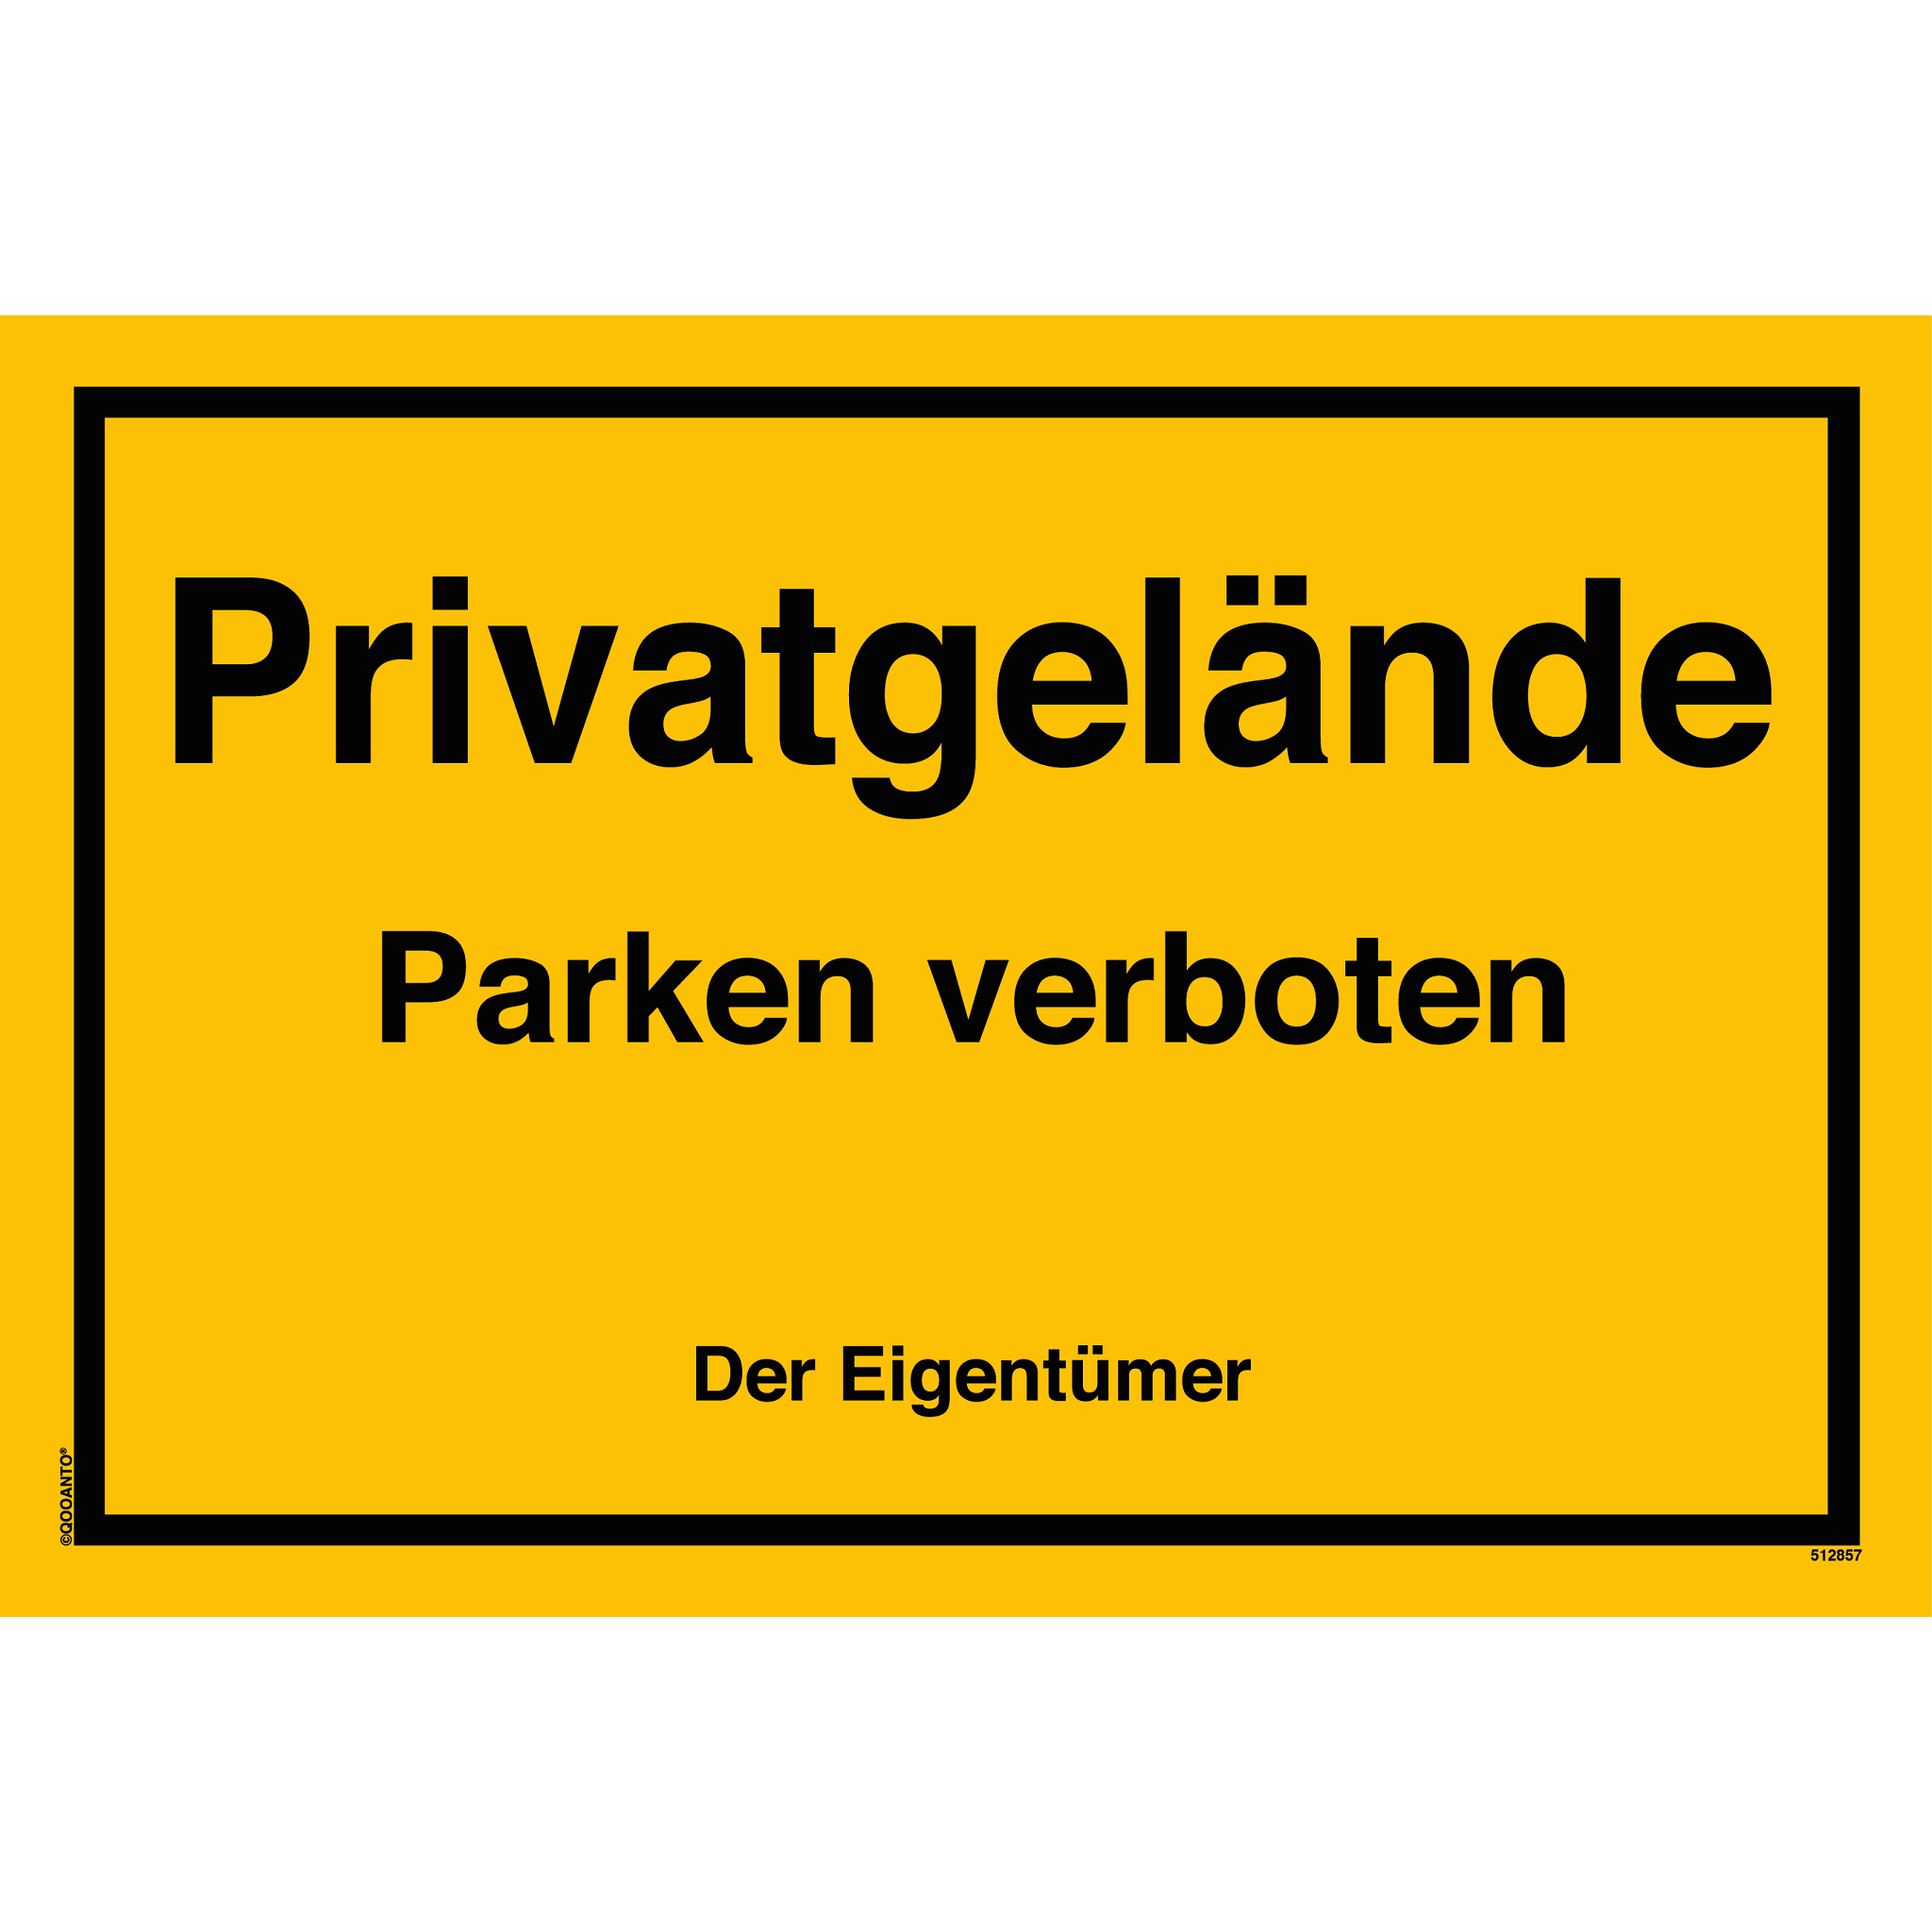 Privatgelände Parken verboten Der Eigentümer, gelb, Schild